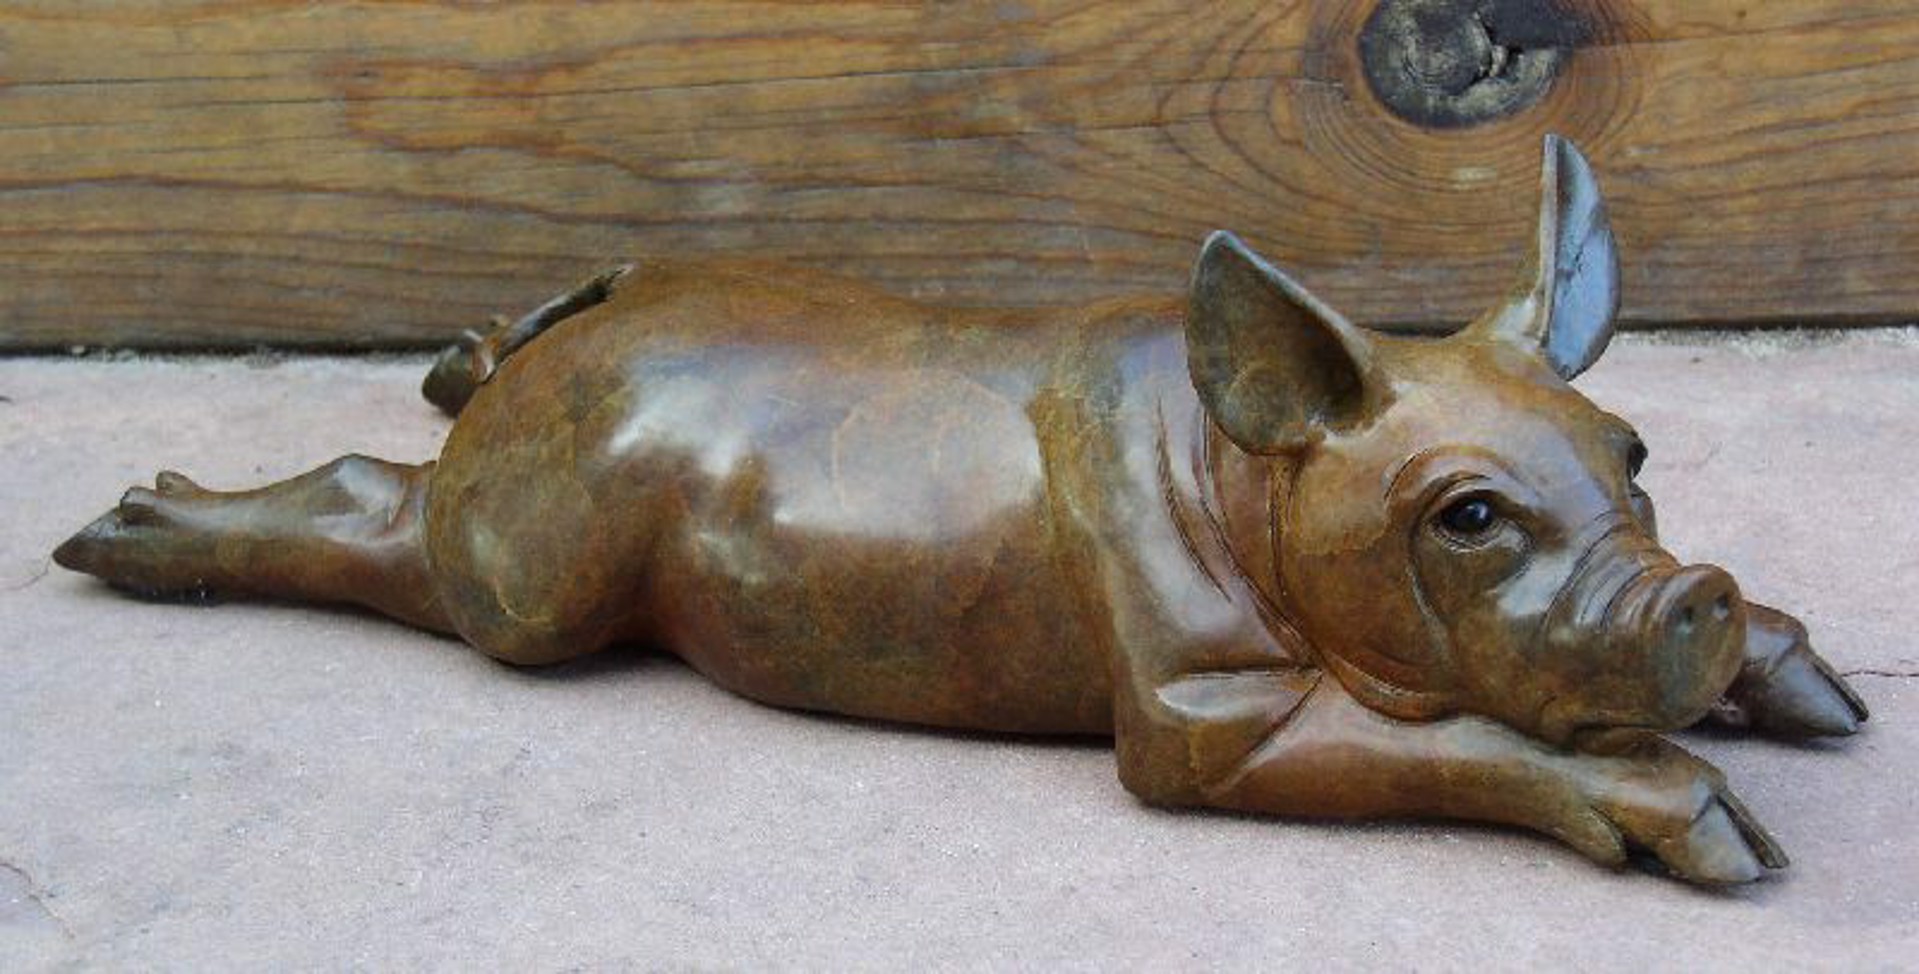 Pig Lying Down by Robert A. Larum (sculptor)